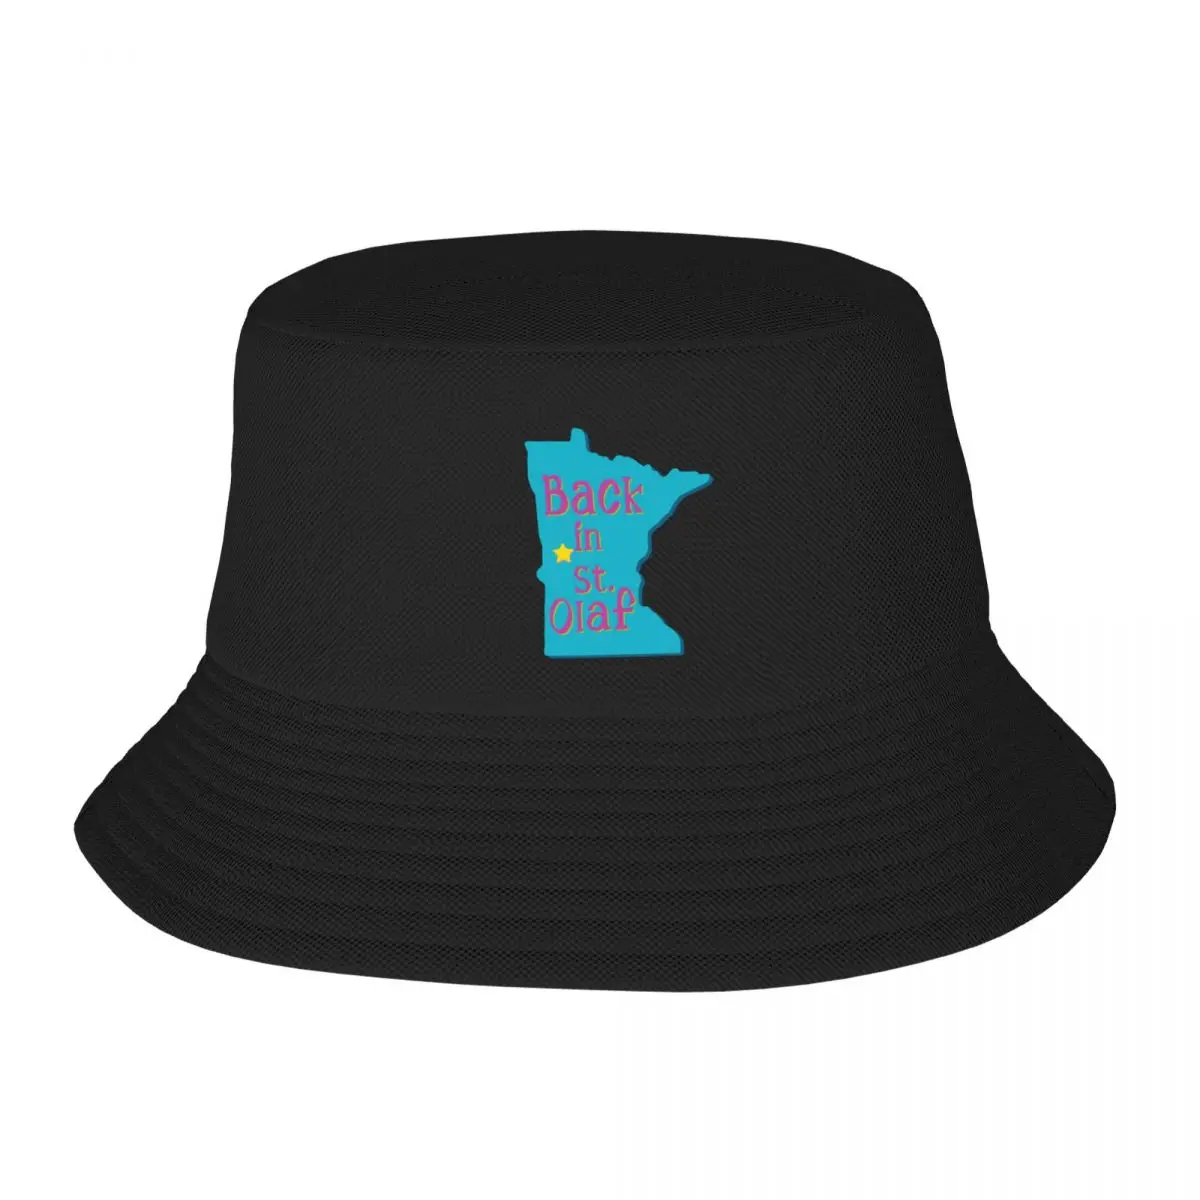 New Back in St. Olaf - 2 Широкополая шляпа с защитой от ультрафиолета, солнечная шляпа, шляпы в западном стиле, детская шляпа, женская шляпа, мужская